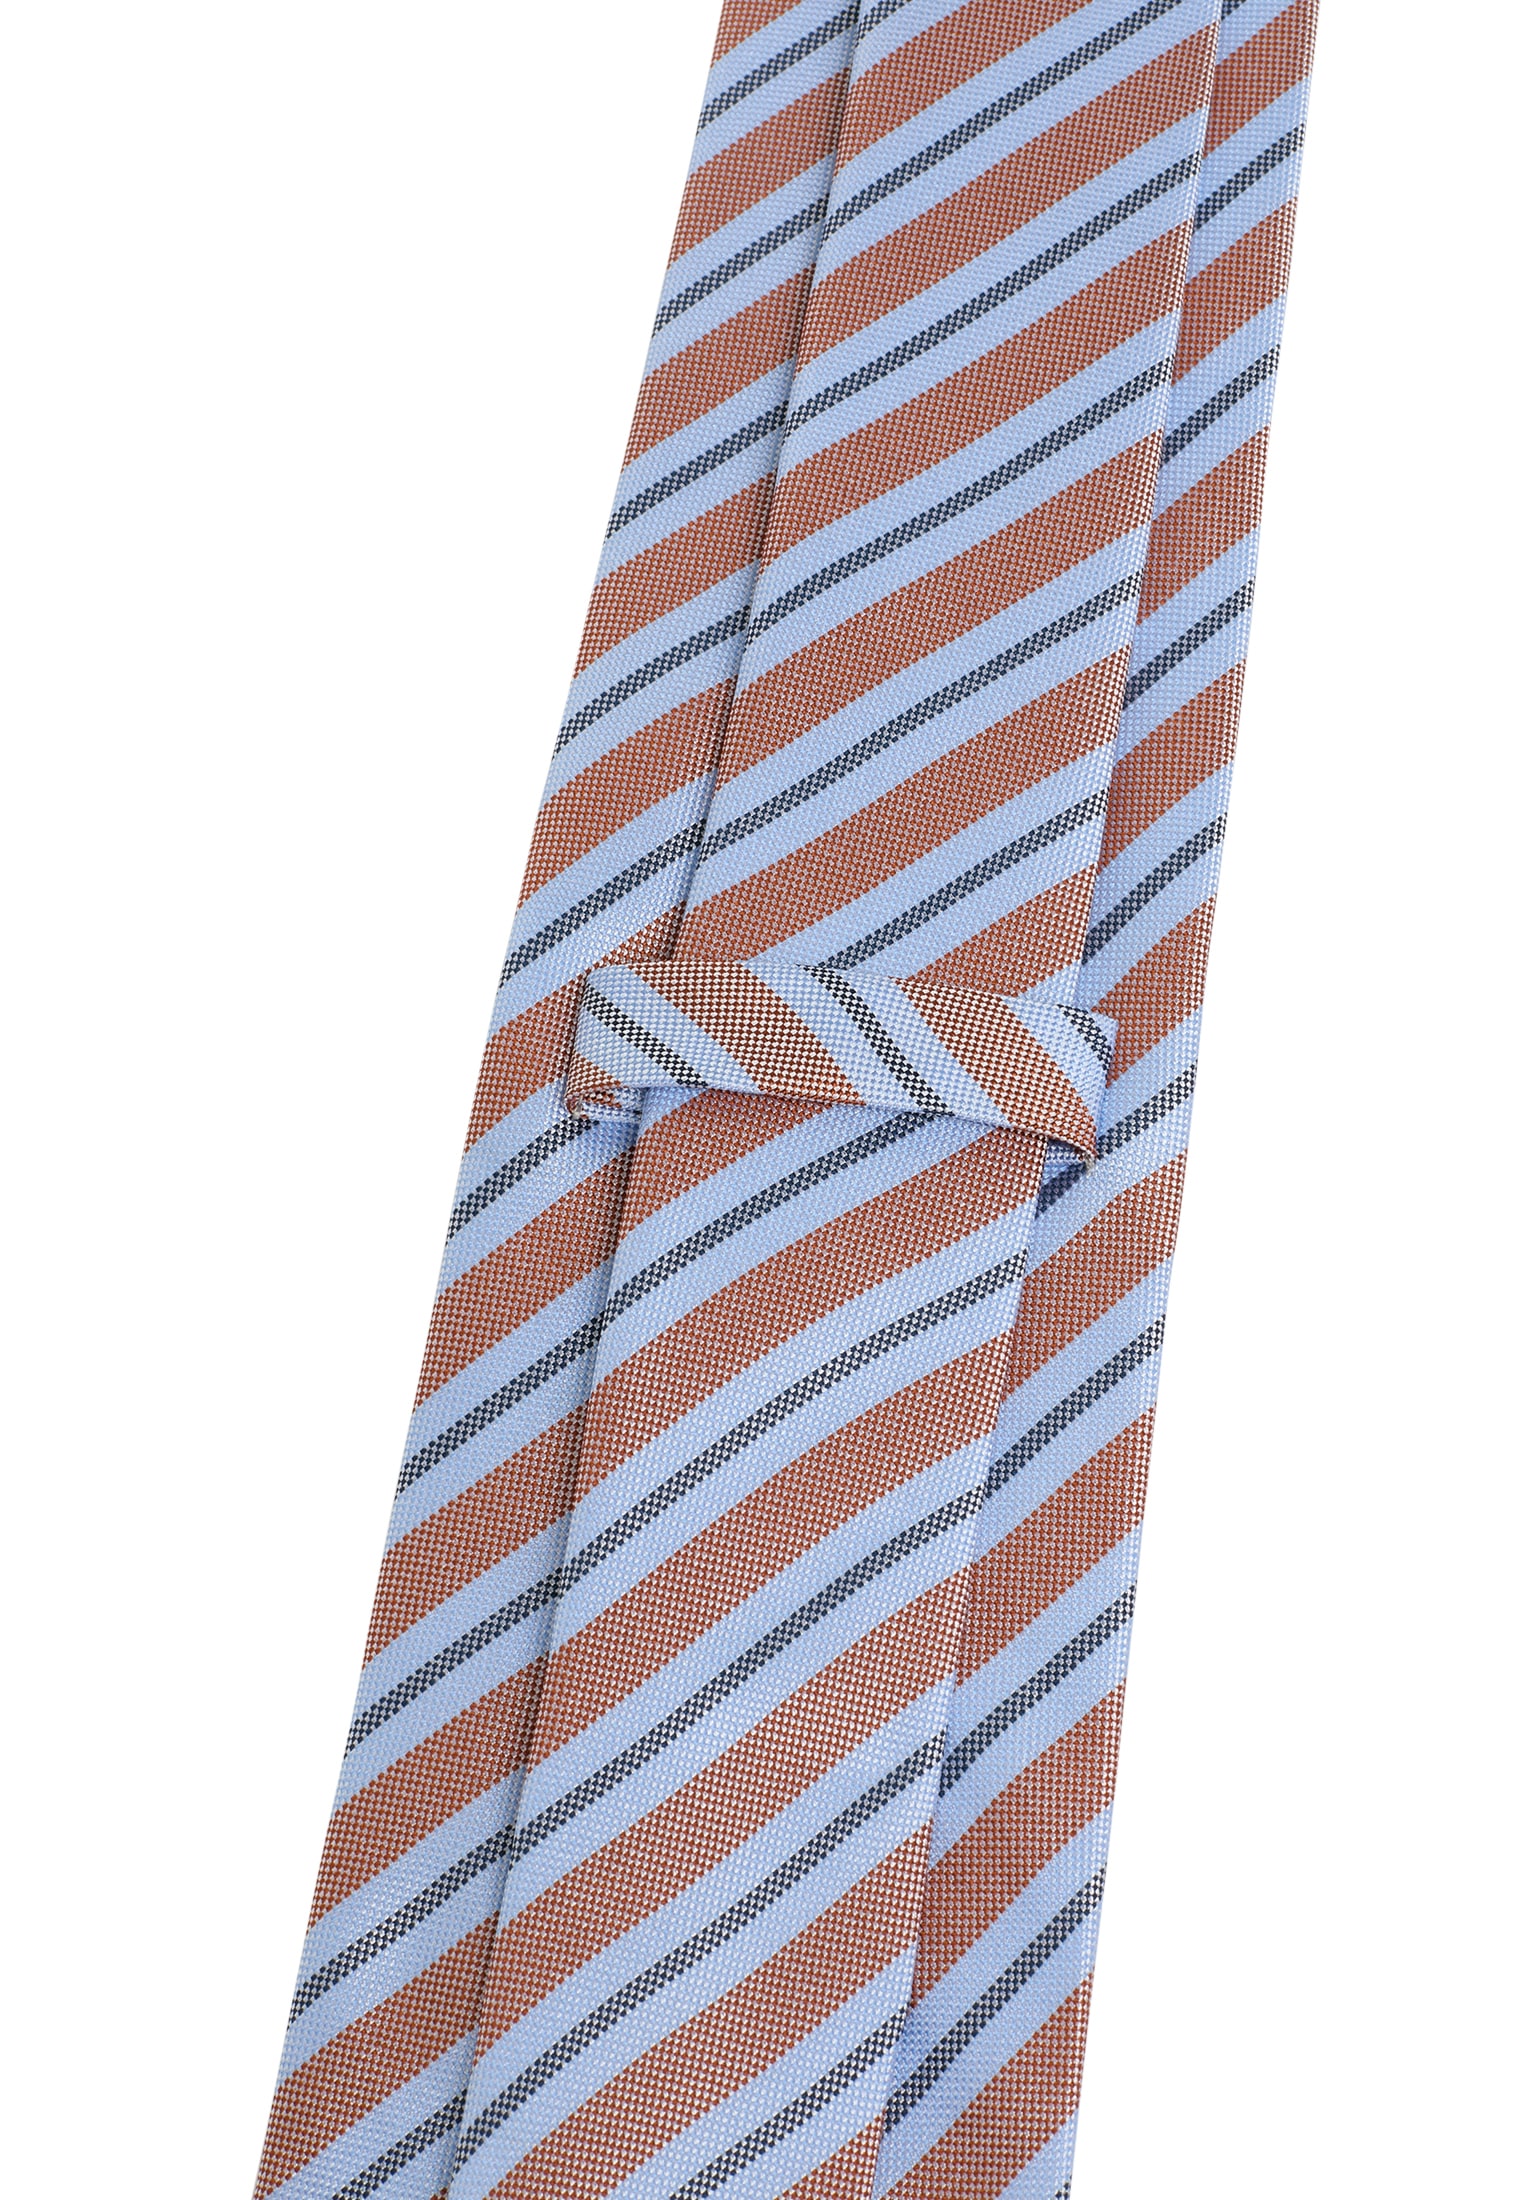 Krawatten online kaufen | Krawatte und mehr jetzt bei Ackermann | Fliegen